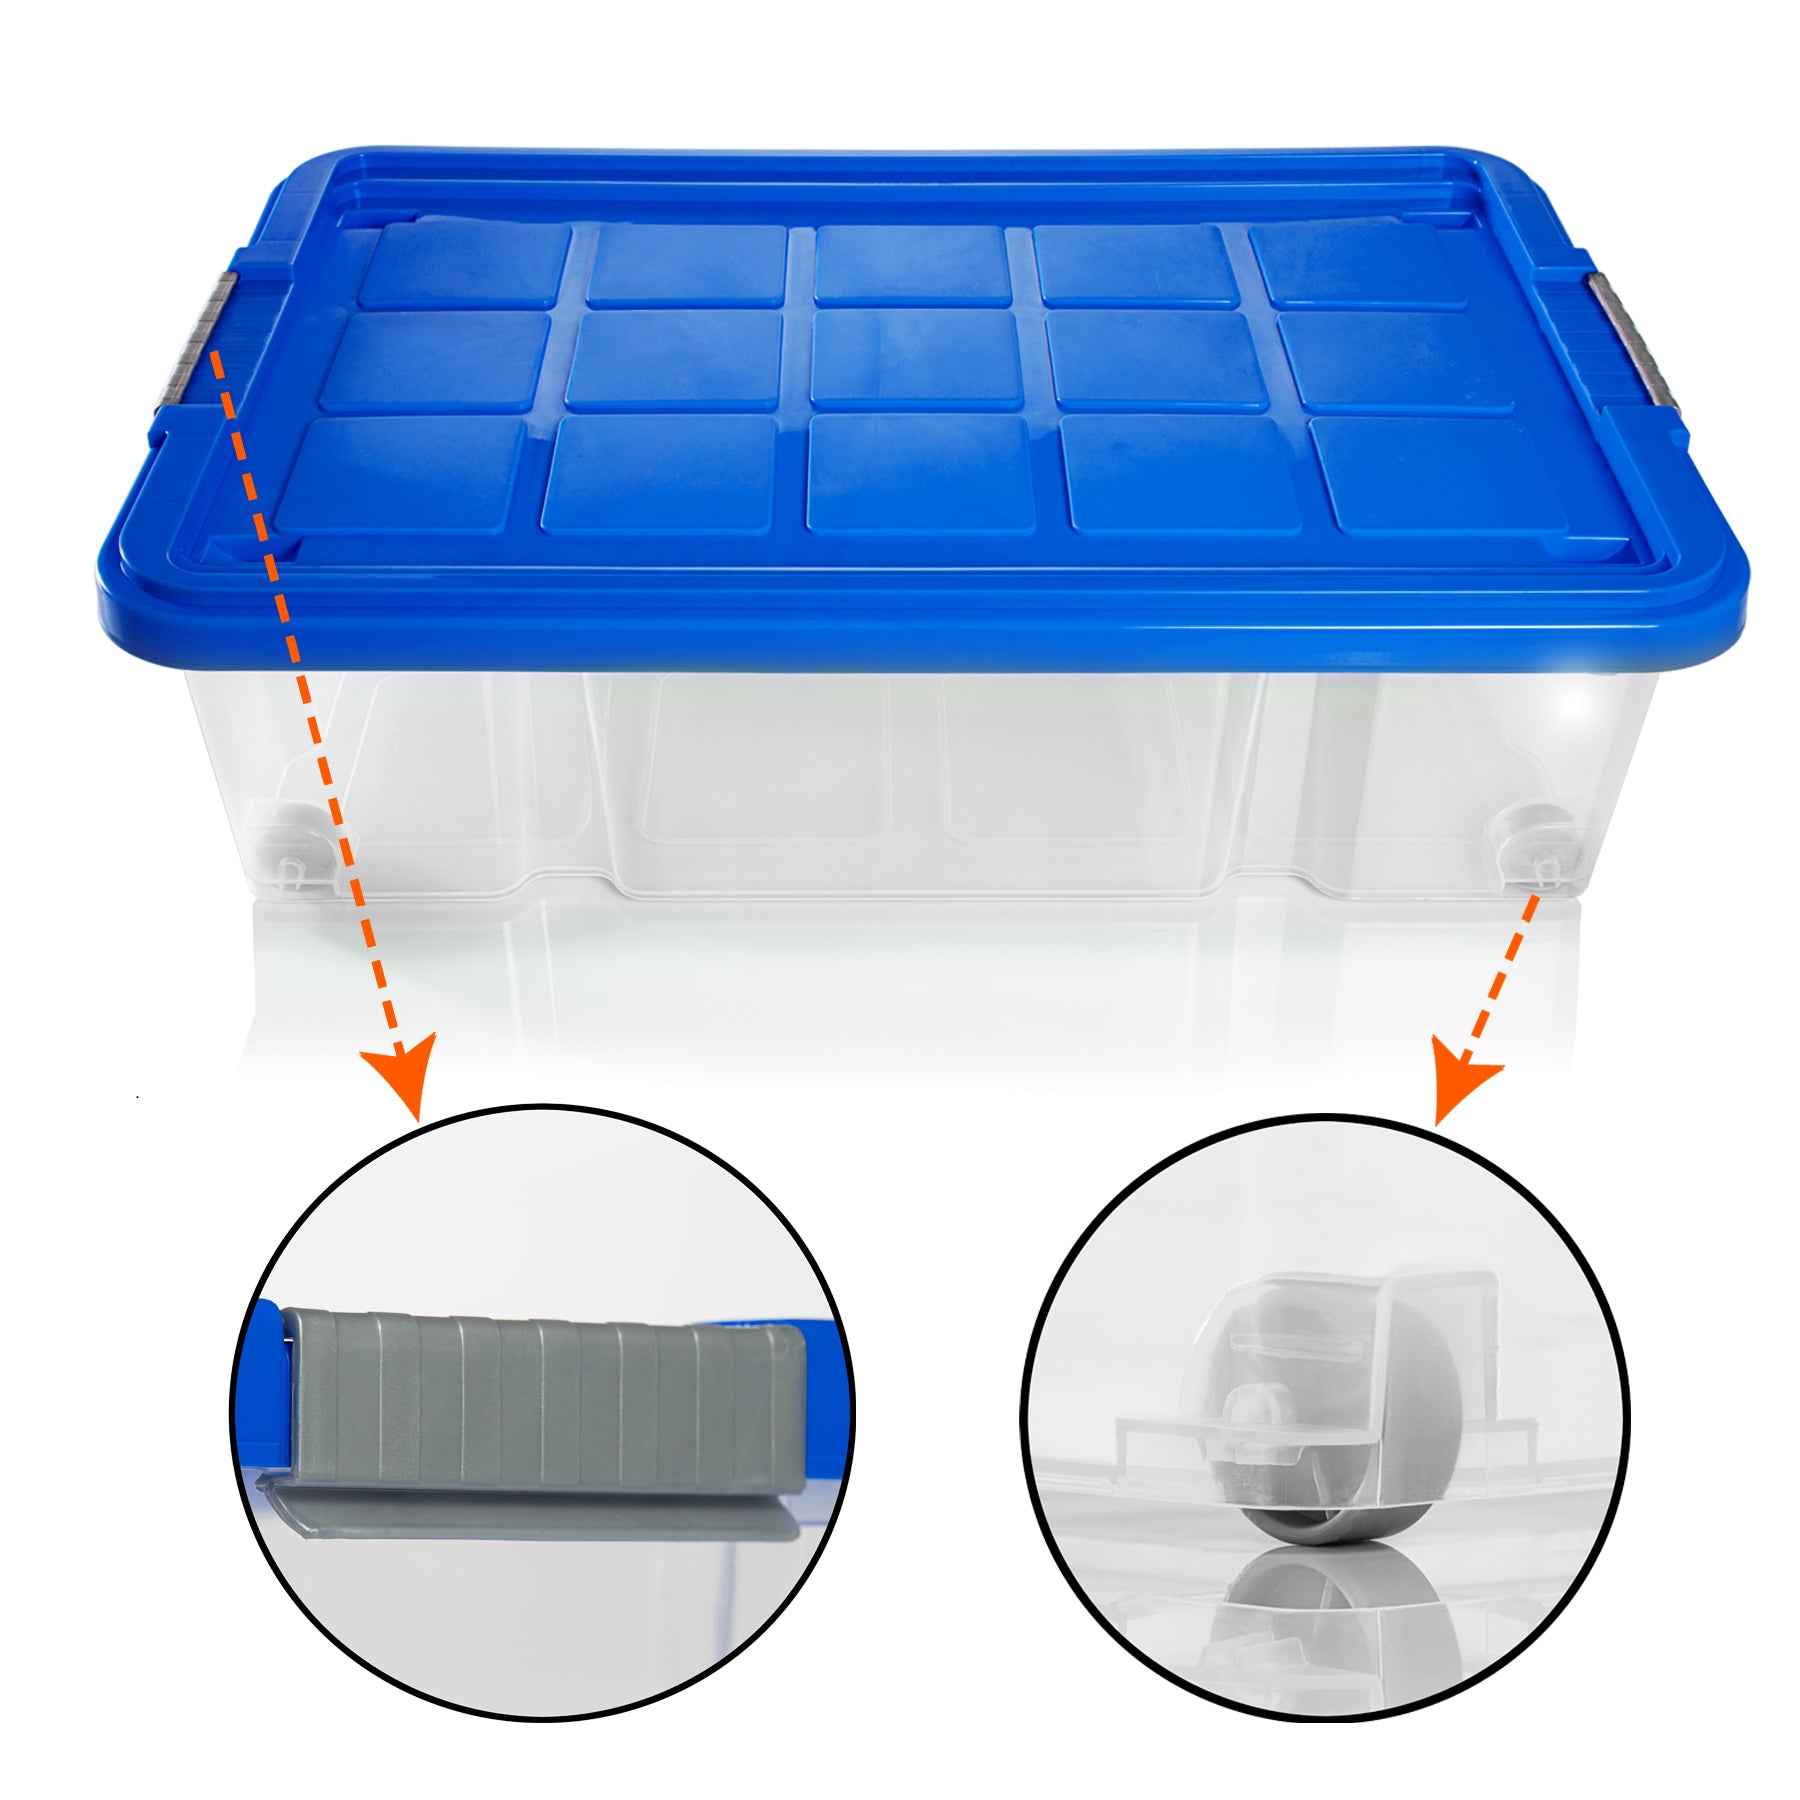 BigDean 2x Unterbettkommode Aufbewahrungsbox mit Deckel 25L azurblau 60x40x17,5cm - mit Rollen + Clipverschluss nestbar - Eurobox Aufbewahrungsbox Storage Box Bettkasten - Made in Germany 3